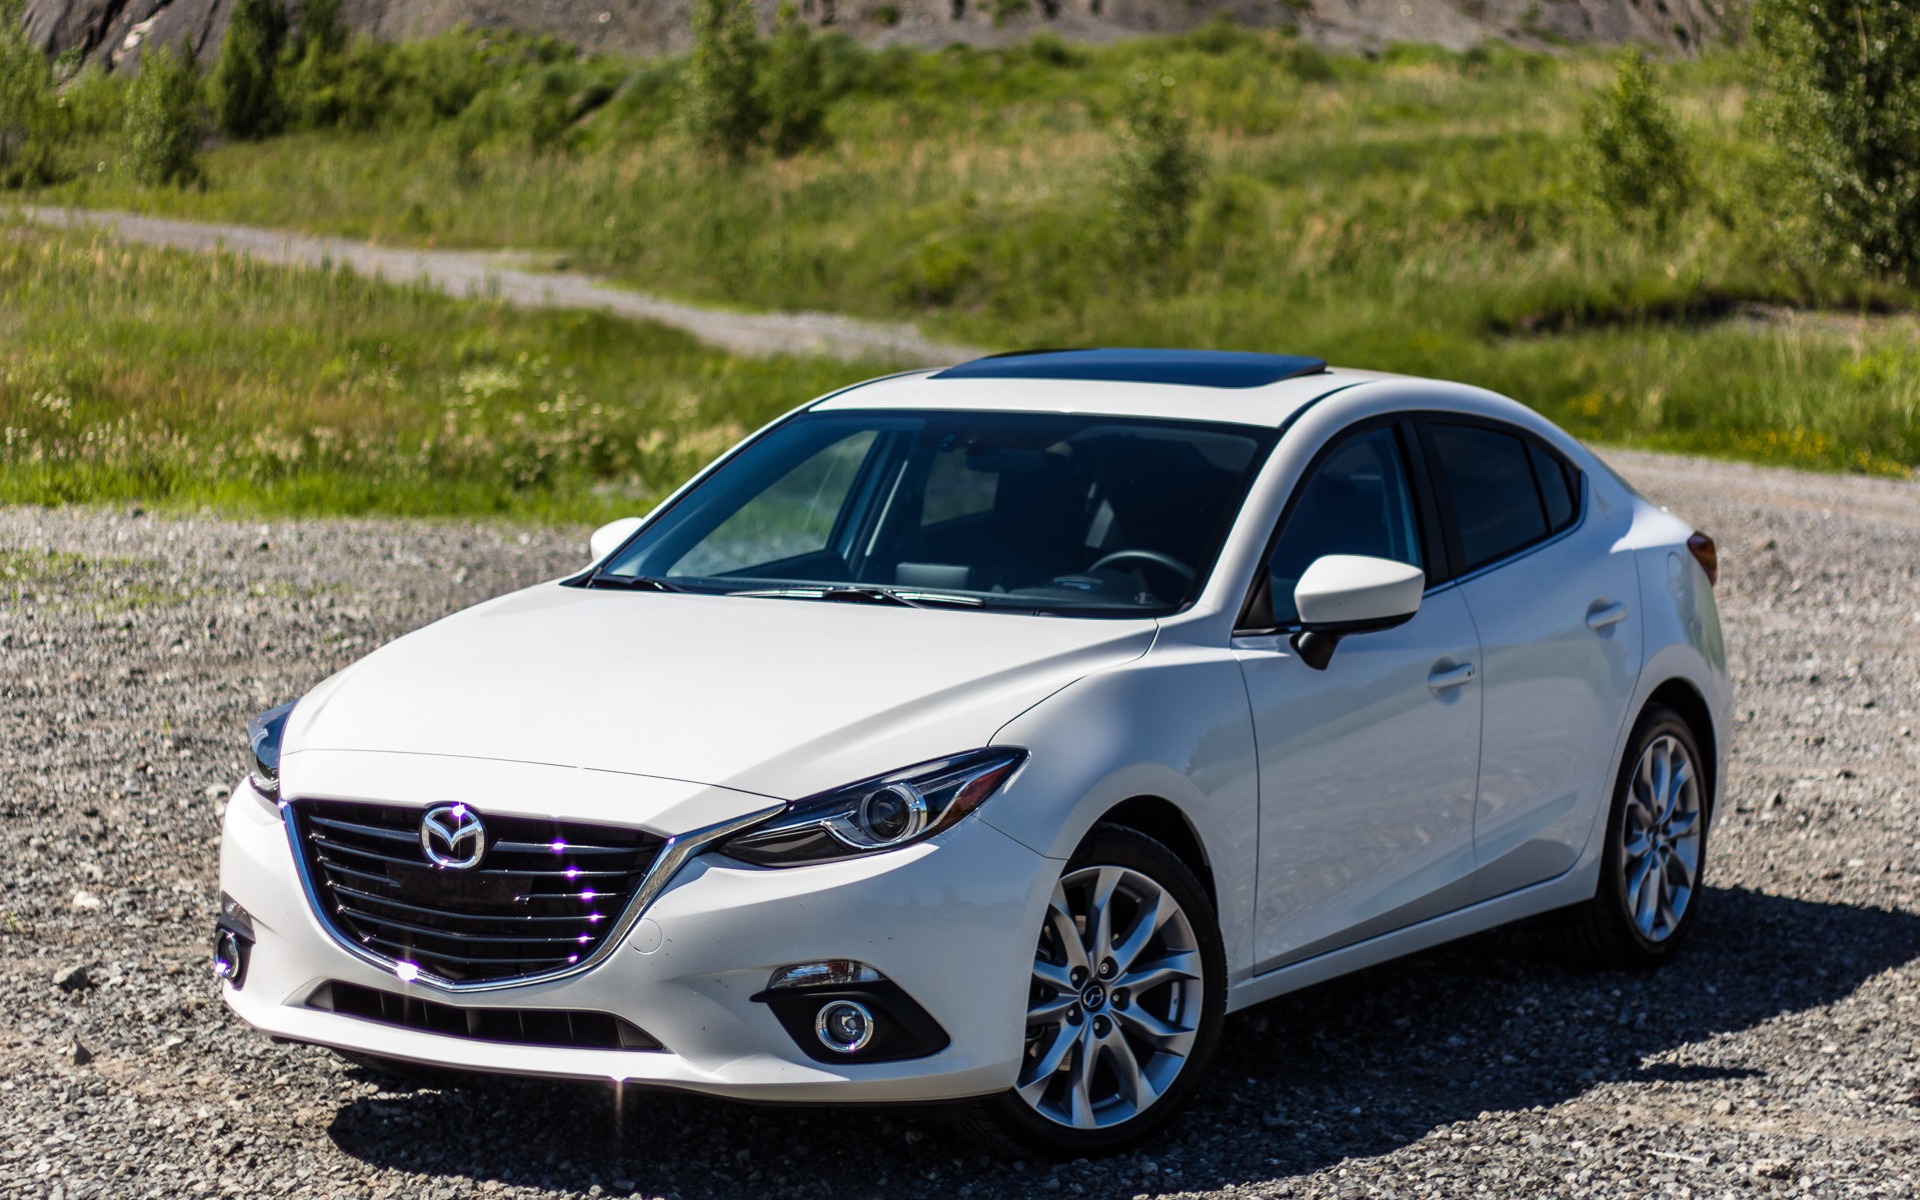 Mua xe Mazda giá 500 triệu, người mua có thể chọn xe oto Mazda 3 2015 - 2016 cũ